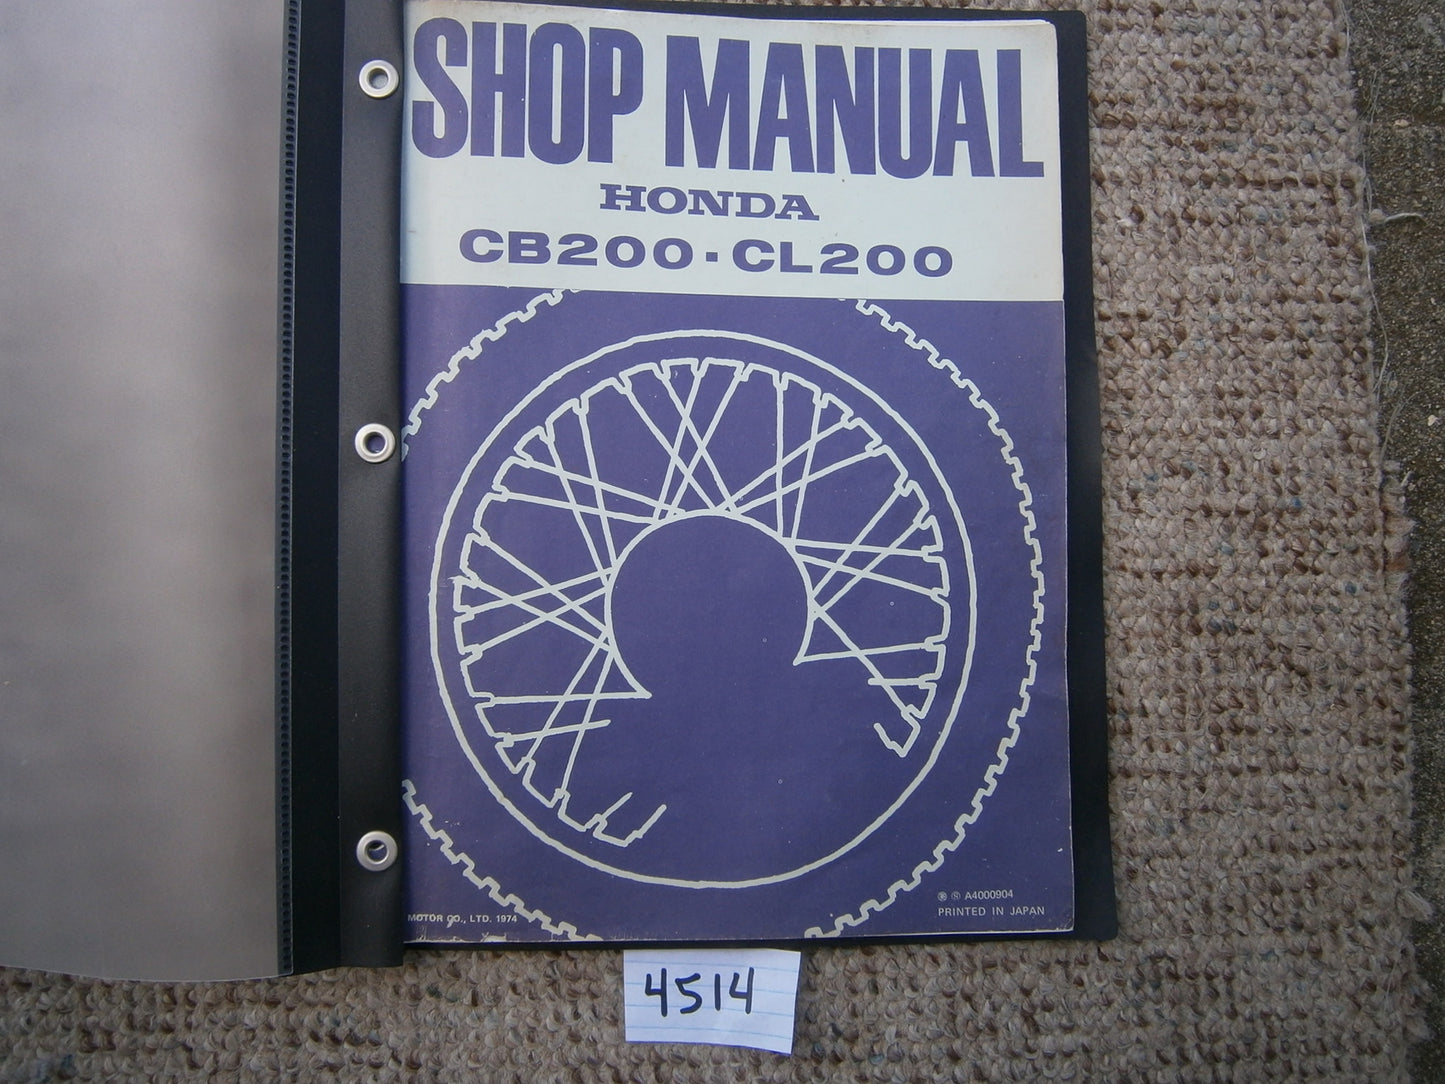 Honda CB200 Honda CL200 Factory Shop Manual 4514